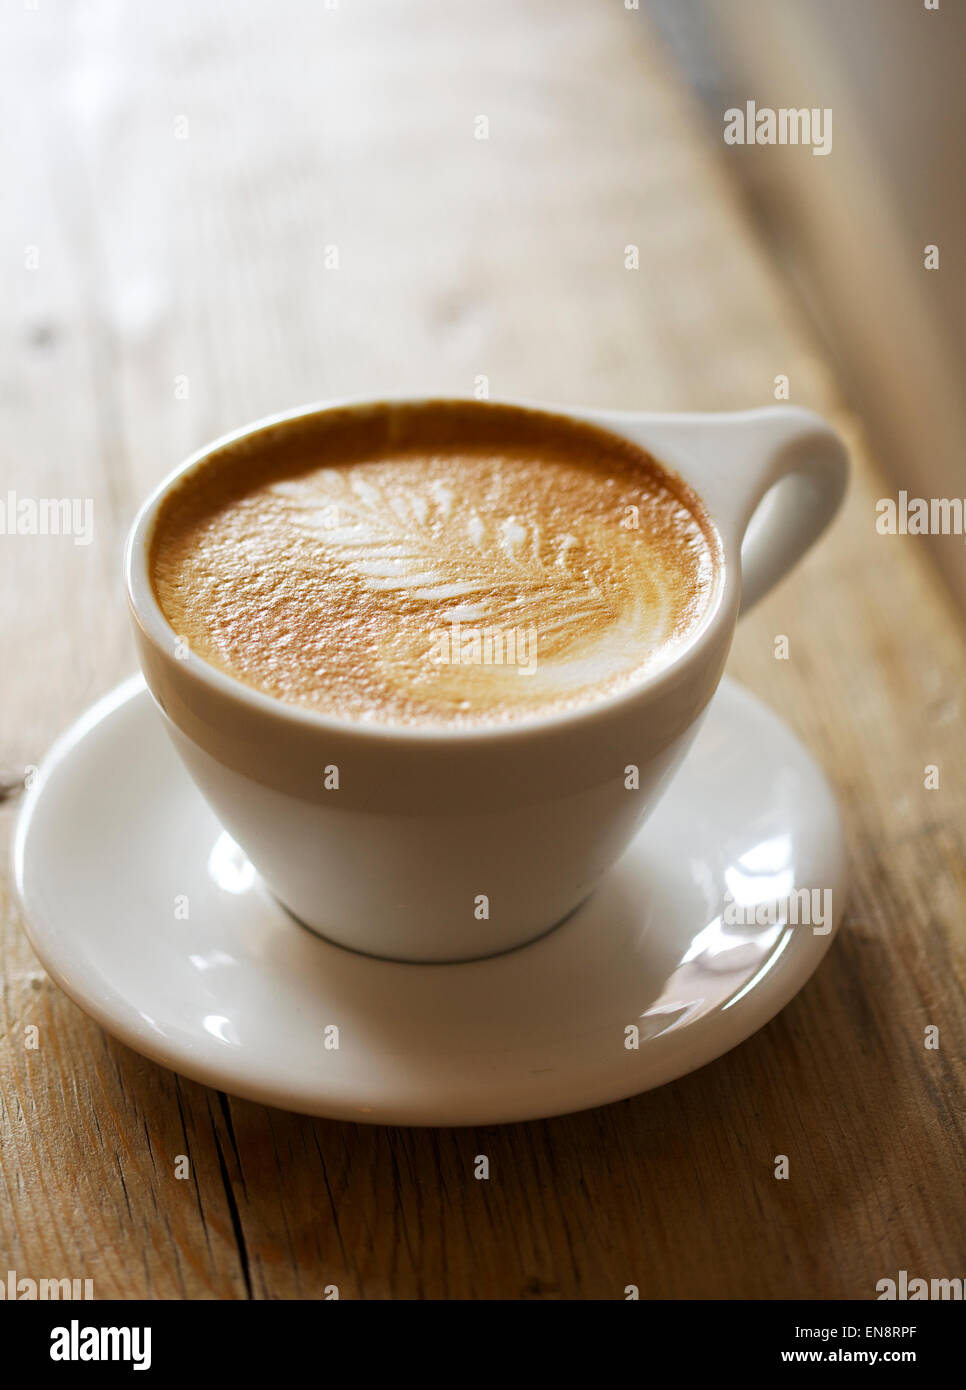 Un cappuccino avec un motif de feuilles dans la mousse dans une tasse blanche avec une soucoupe assis sur une table en bois, l'arrière-plan est flou. Banque D'Images